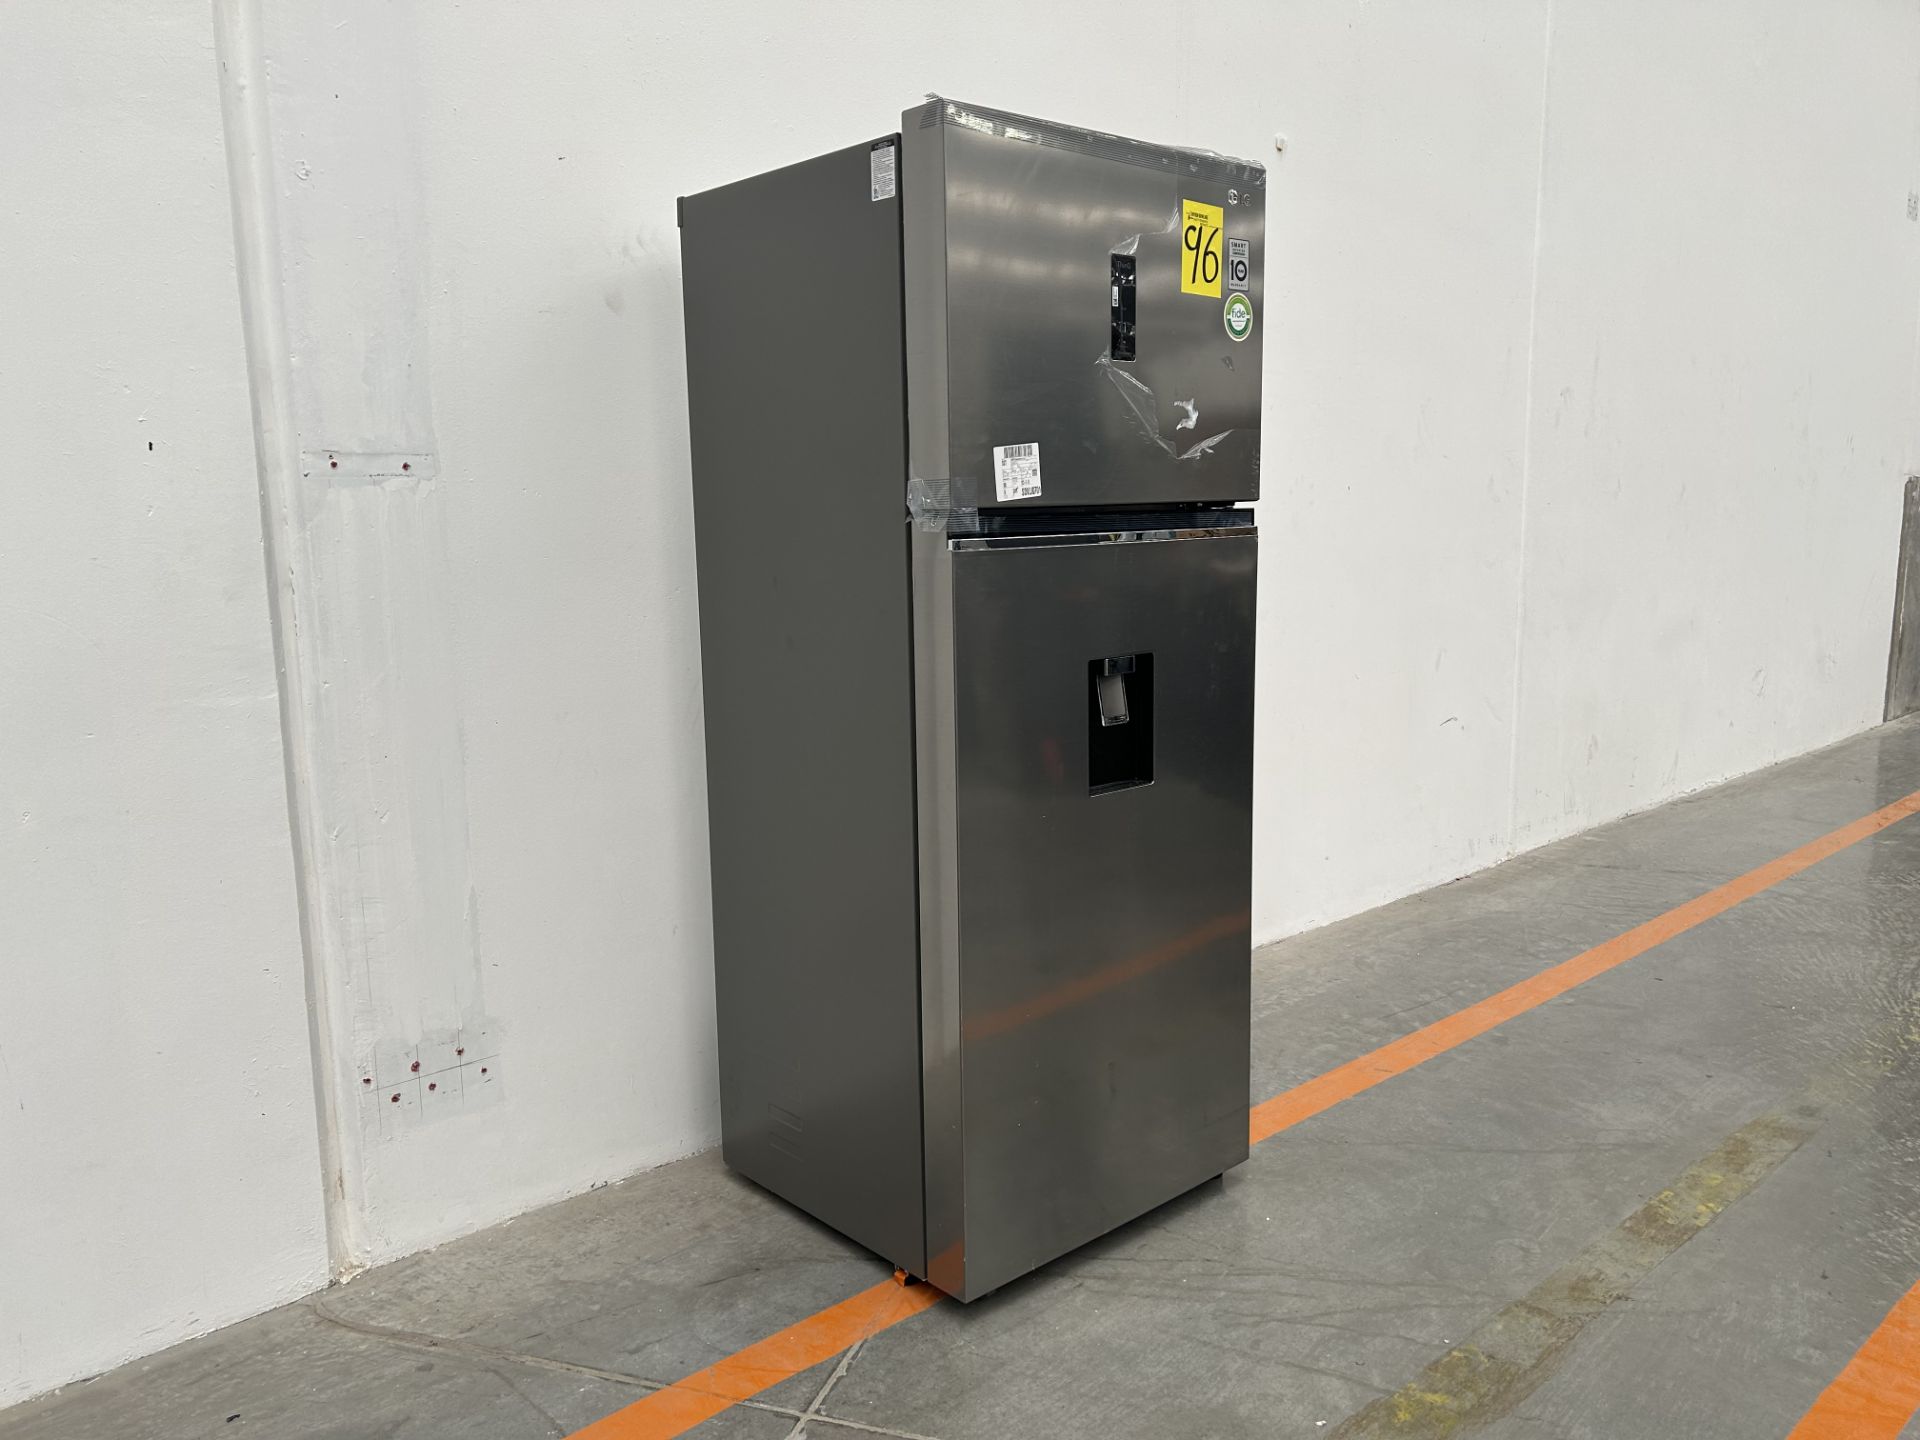 (NUEVO) Refrigerador con dispensador de agua Marca LG, Modelo VT40AWP, Serie L1S381, Color GRIS - Image 2 of 5